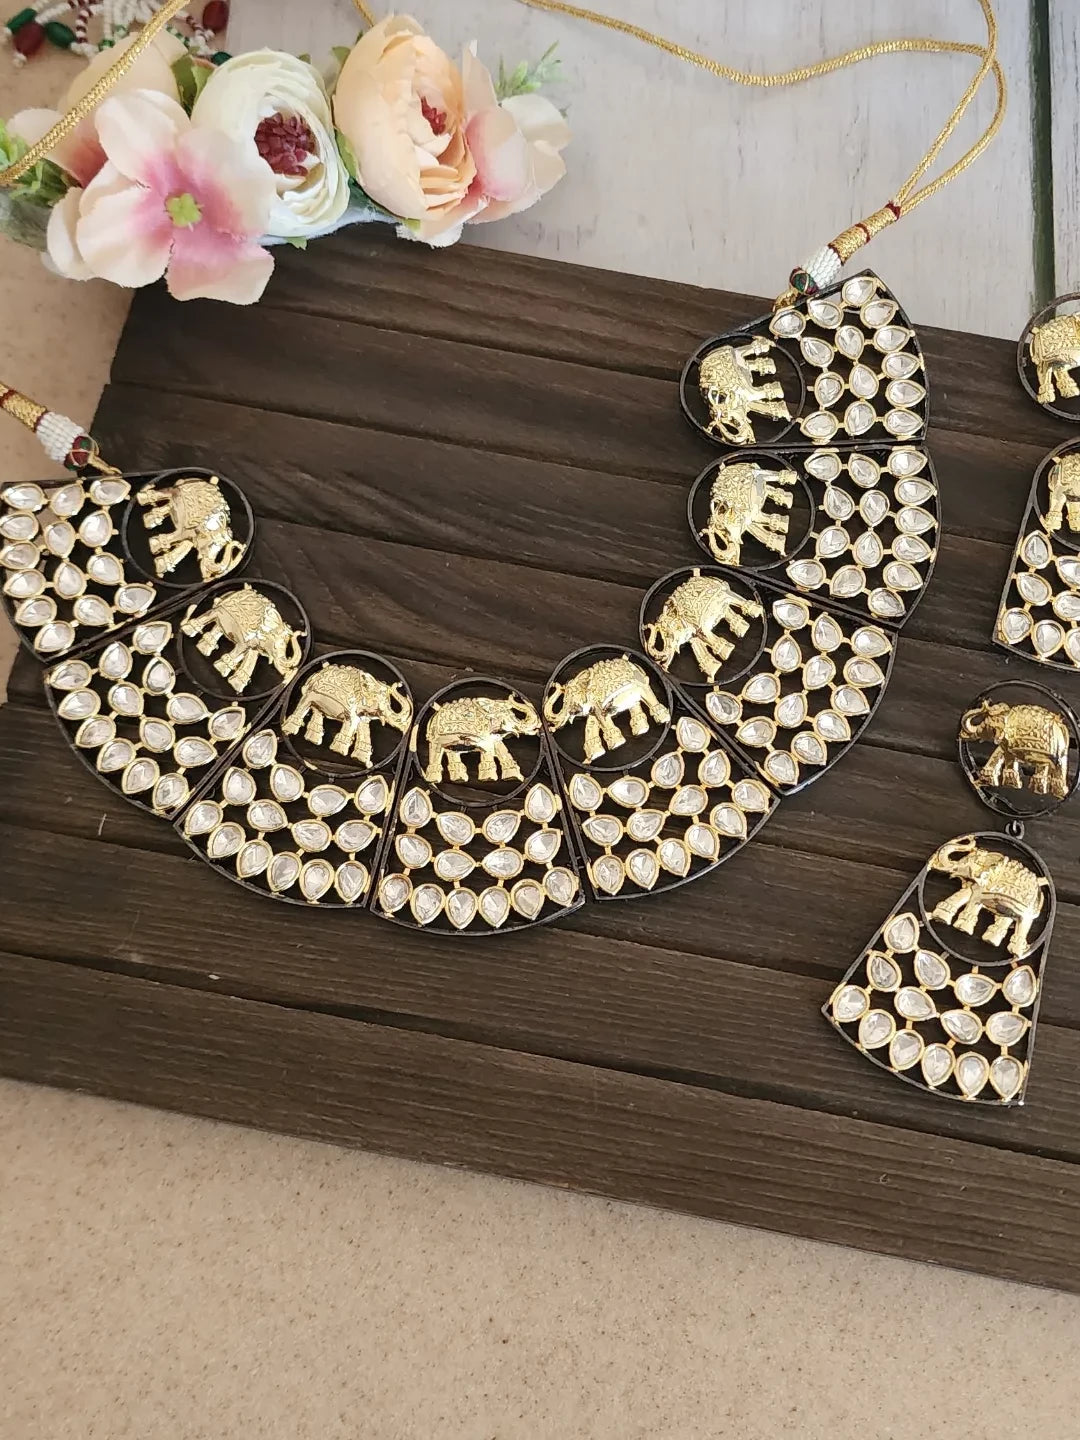 Hathi dualtone polki necklace set